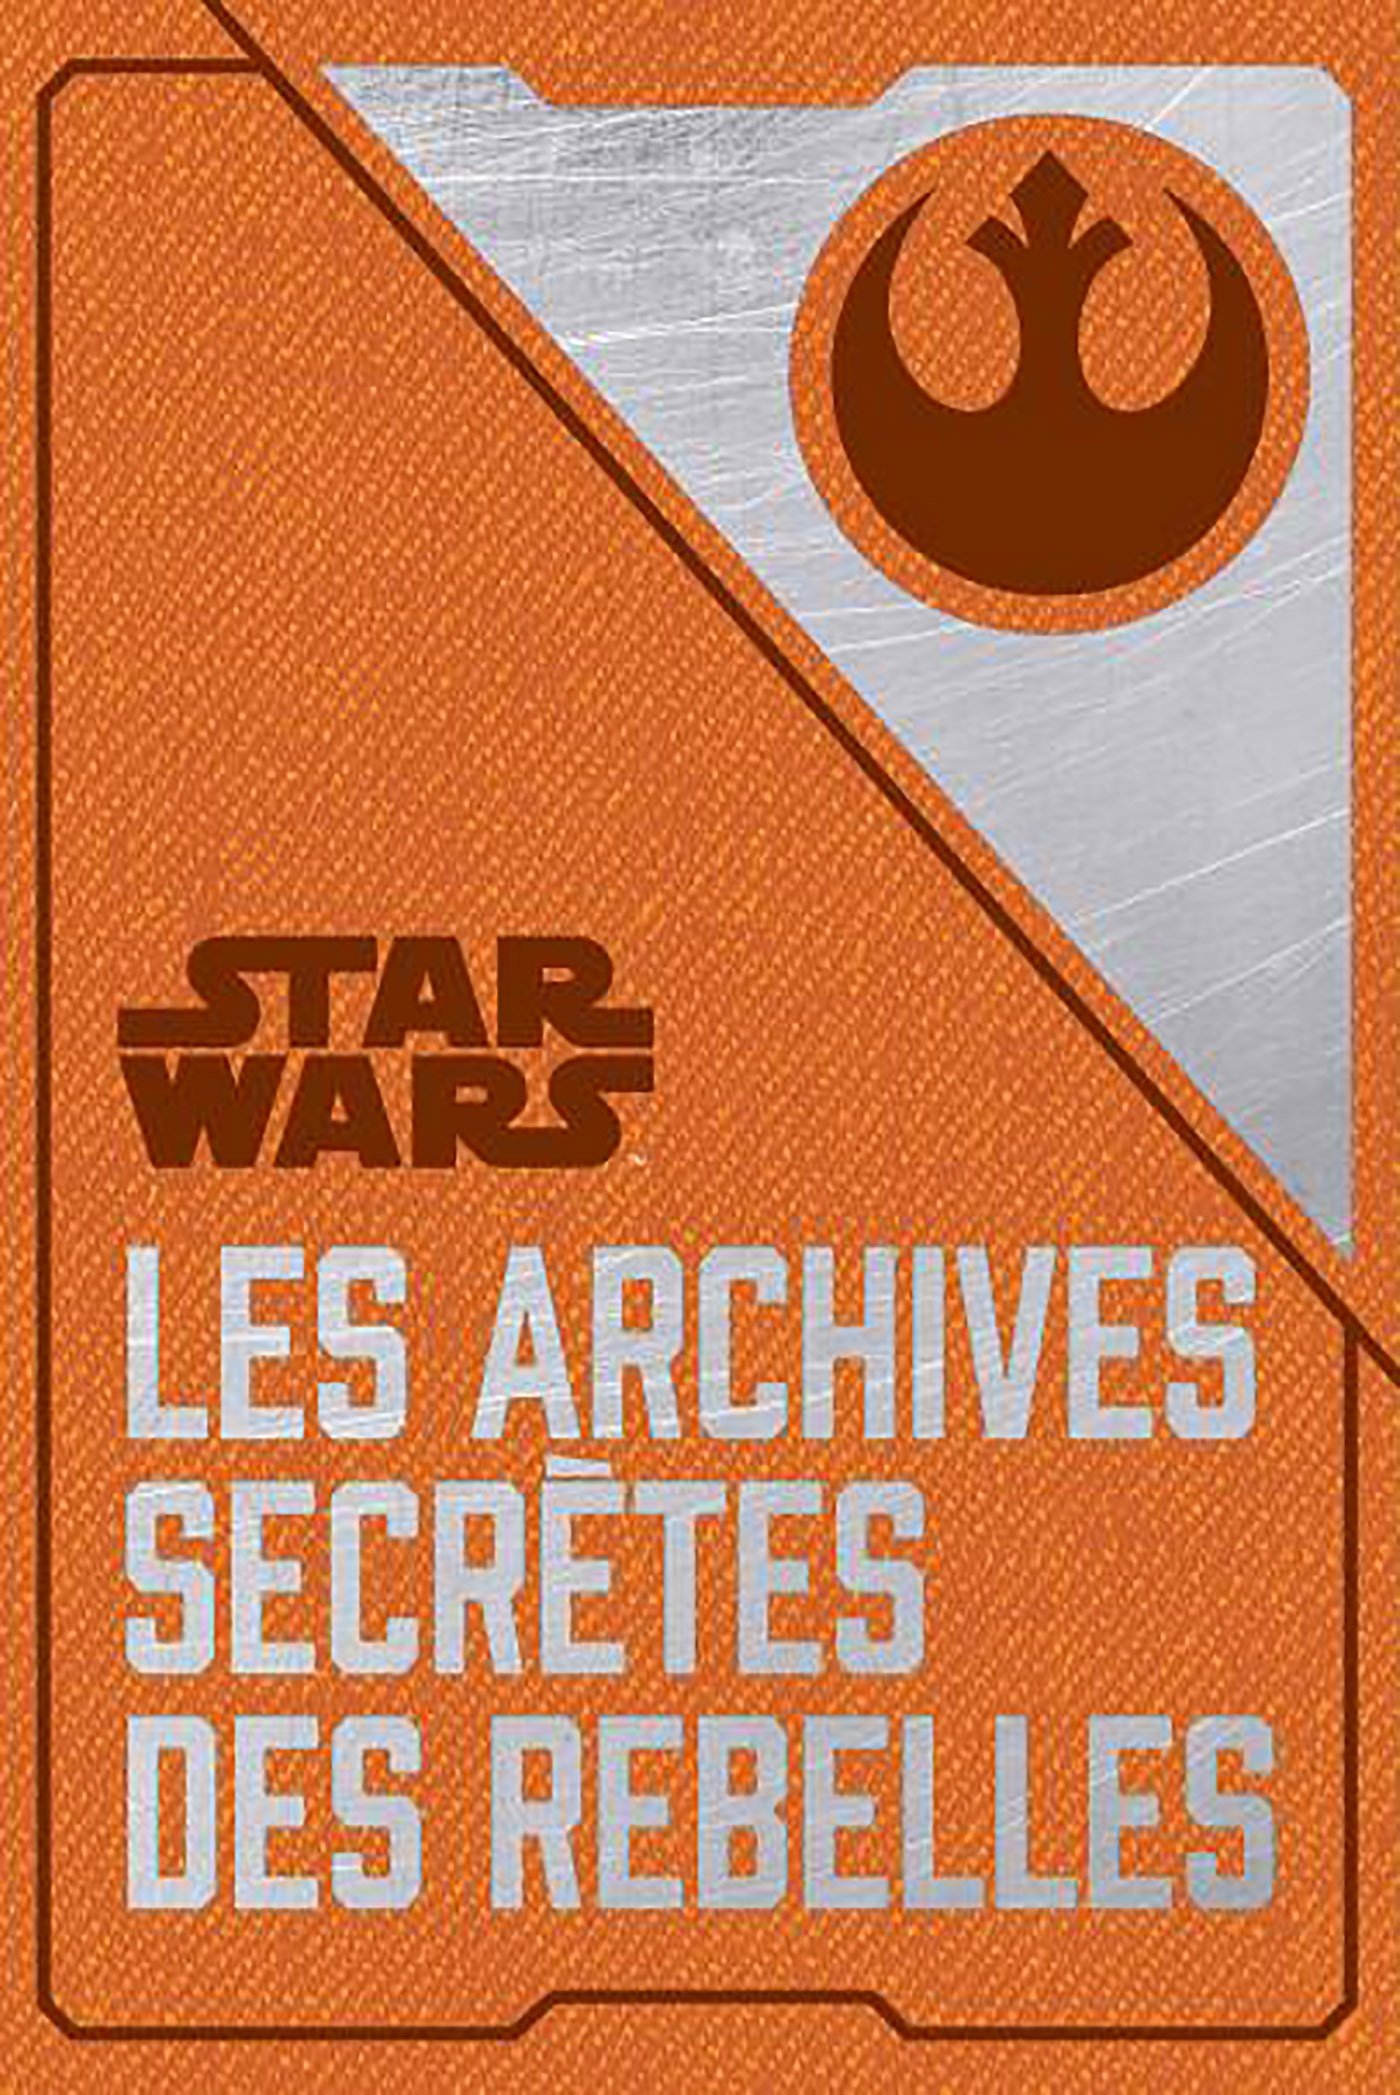 LIVRE Les archives secrètes des Rebelles